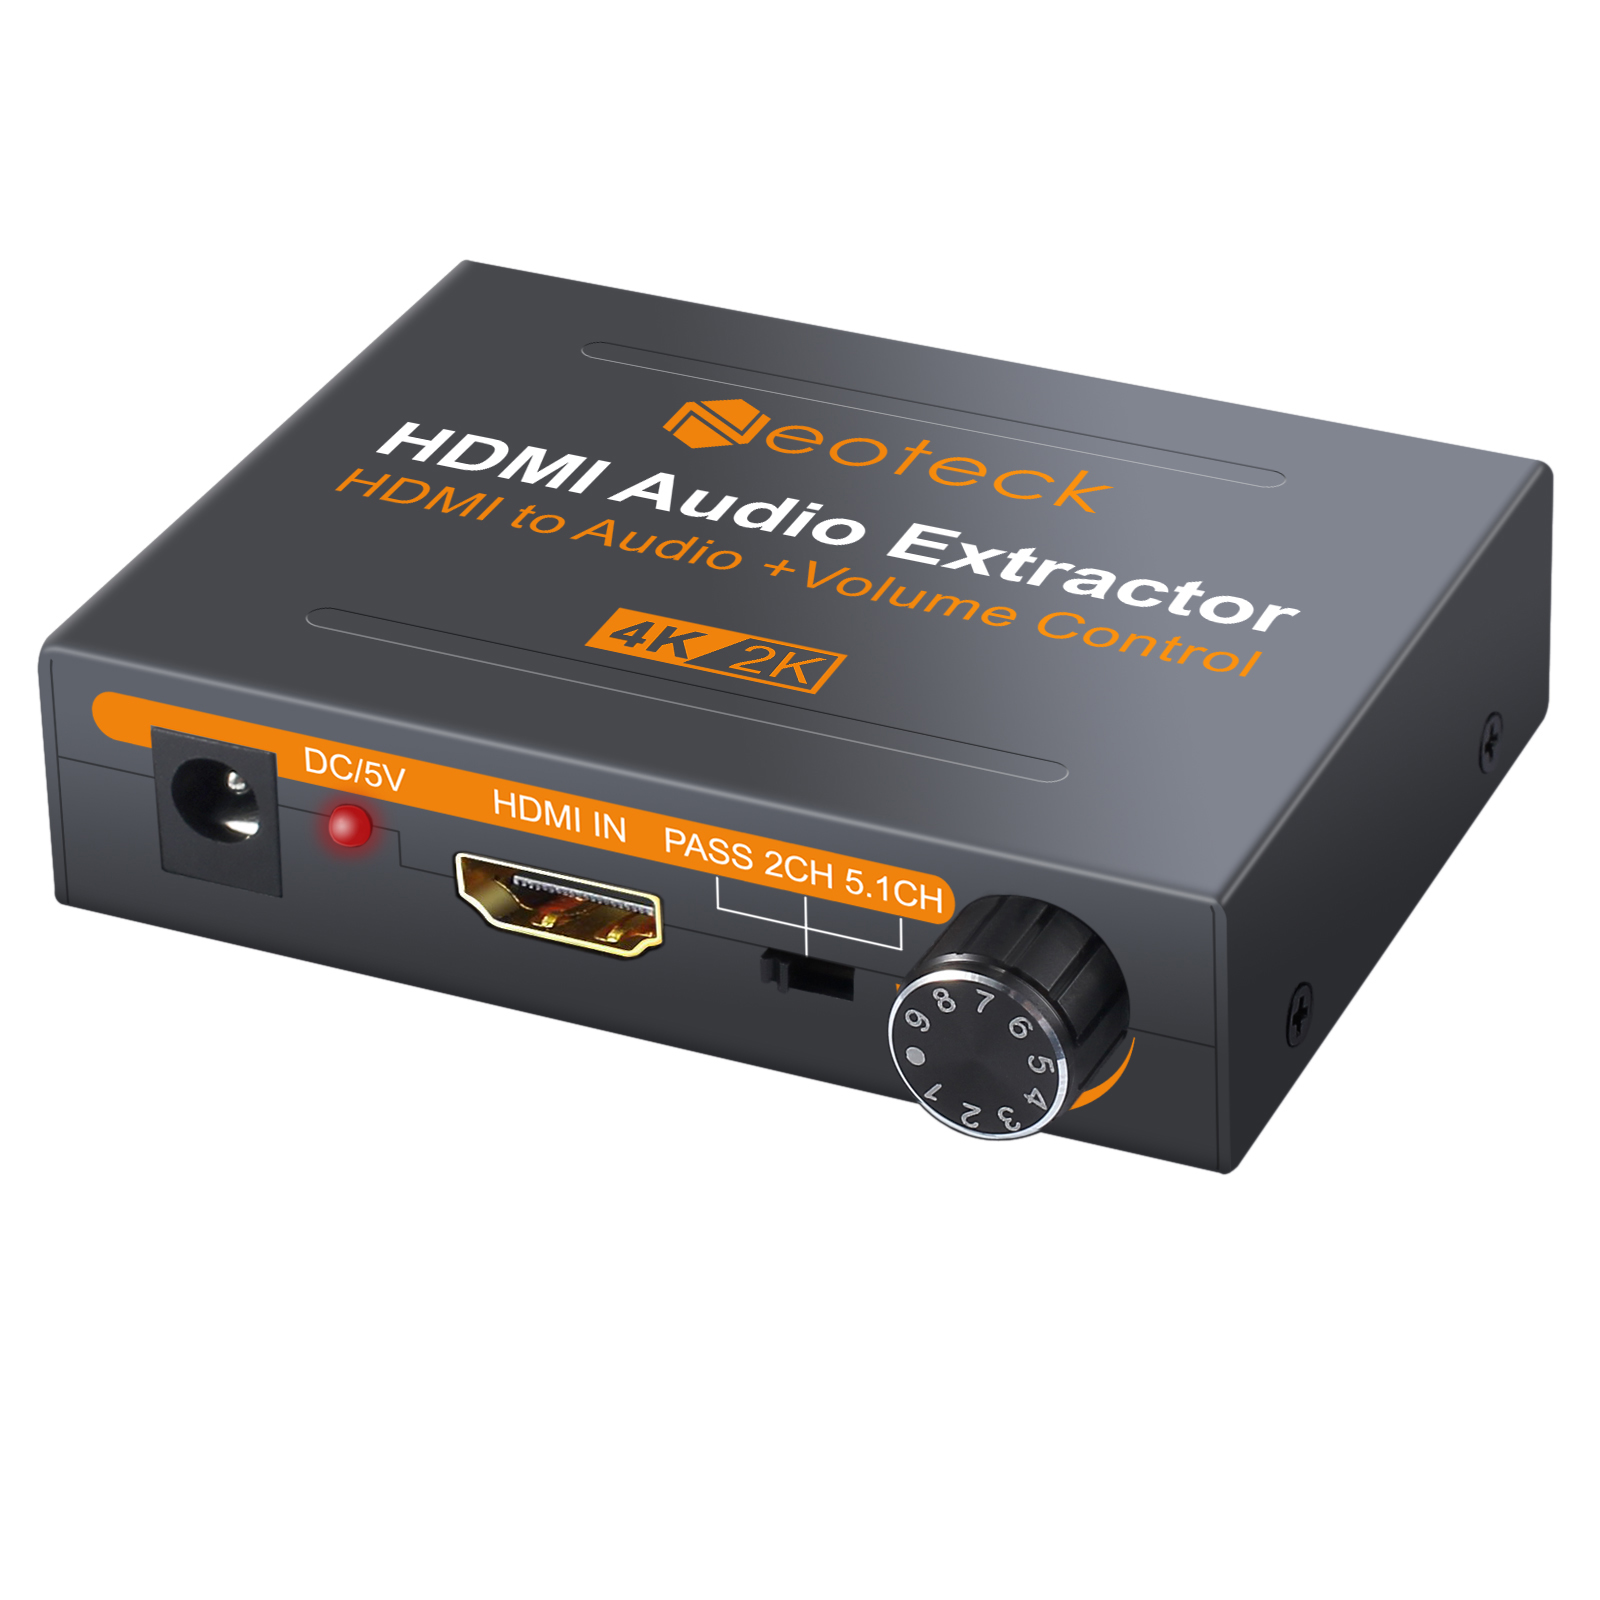 audio extractor